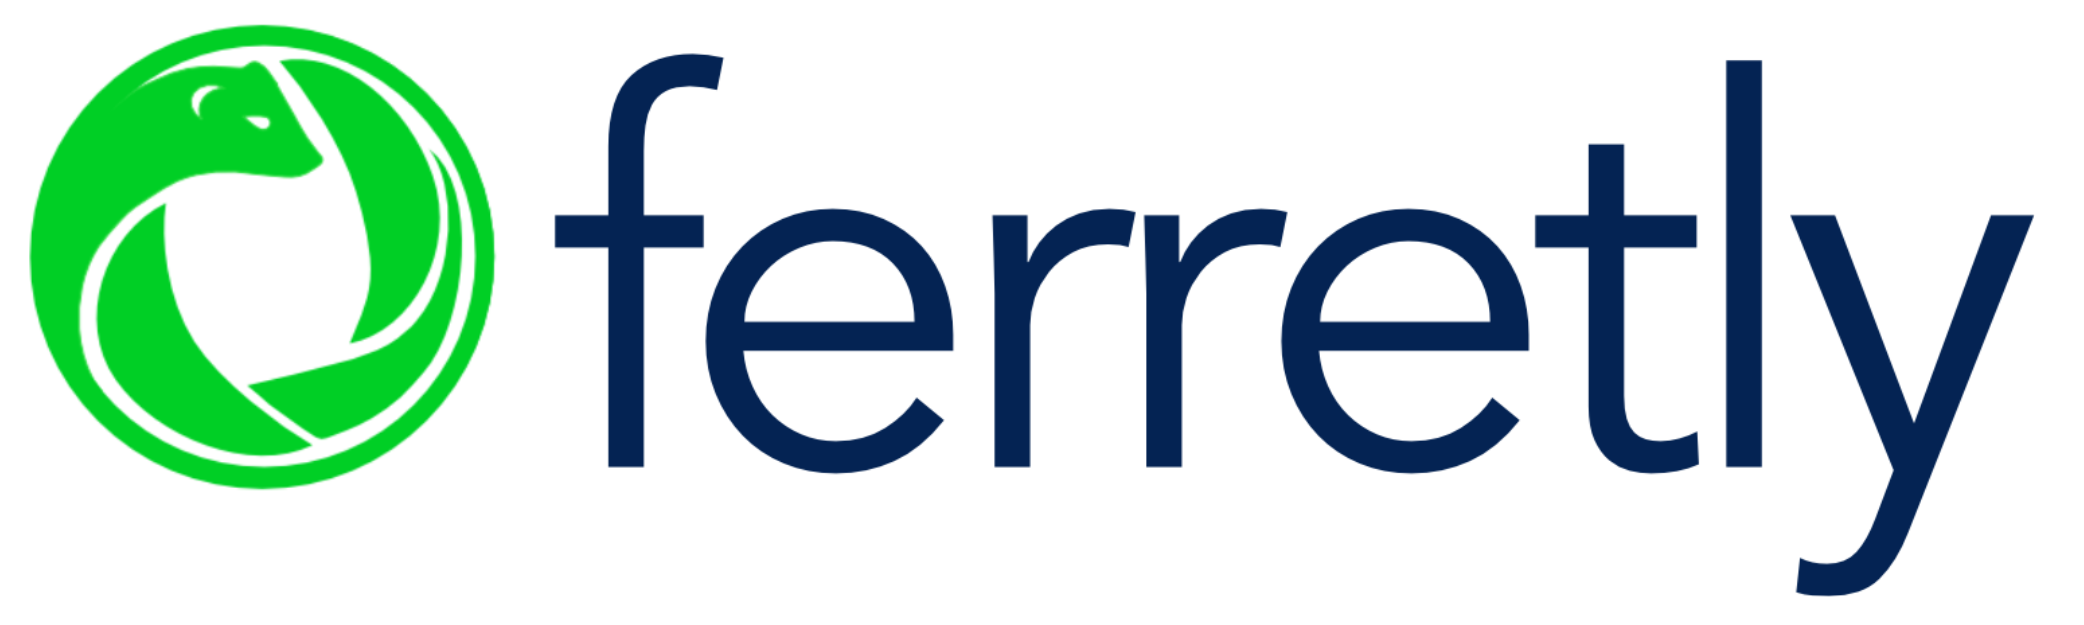 Ferretly logo